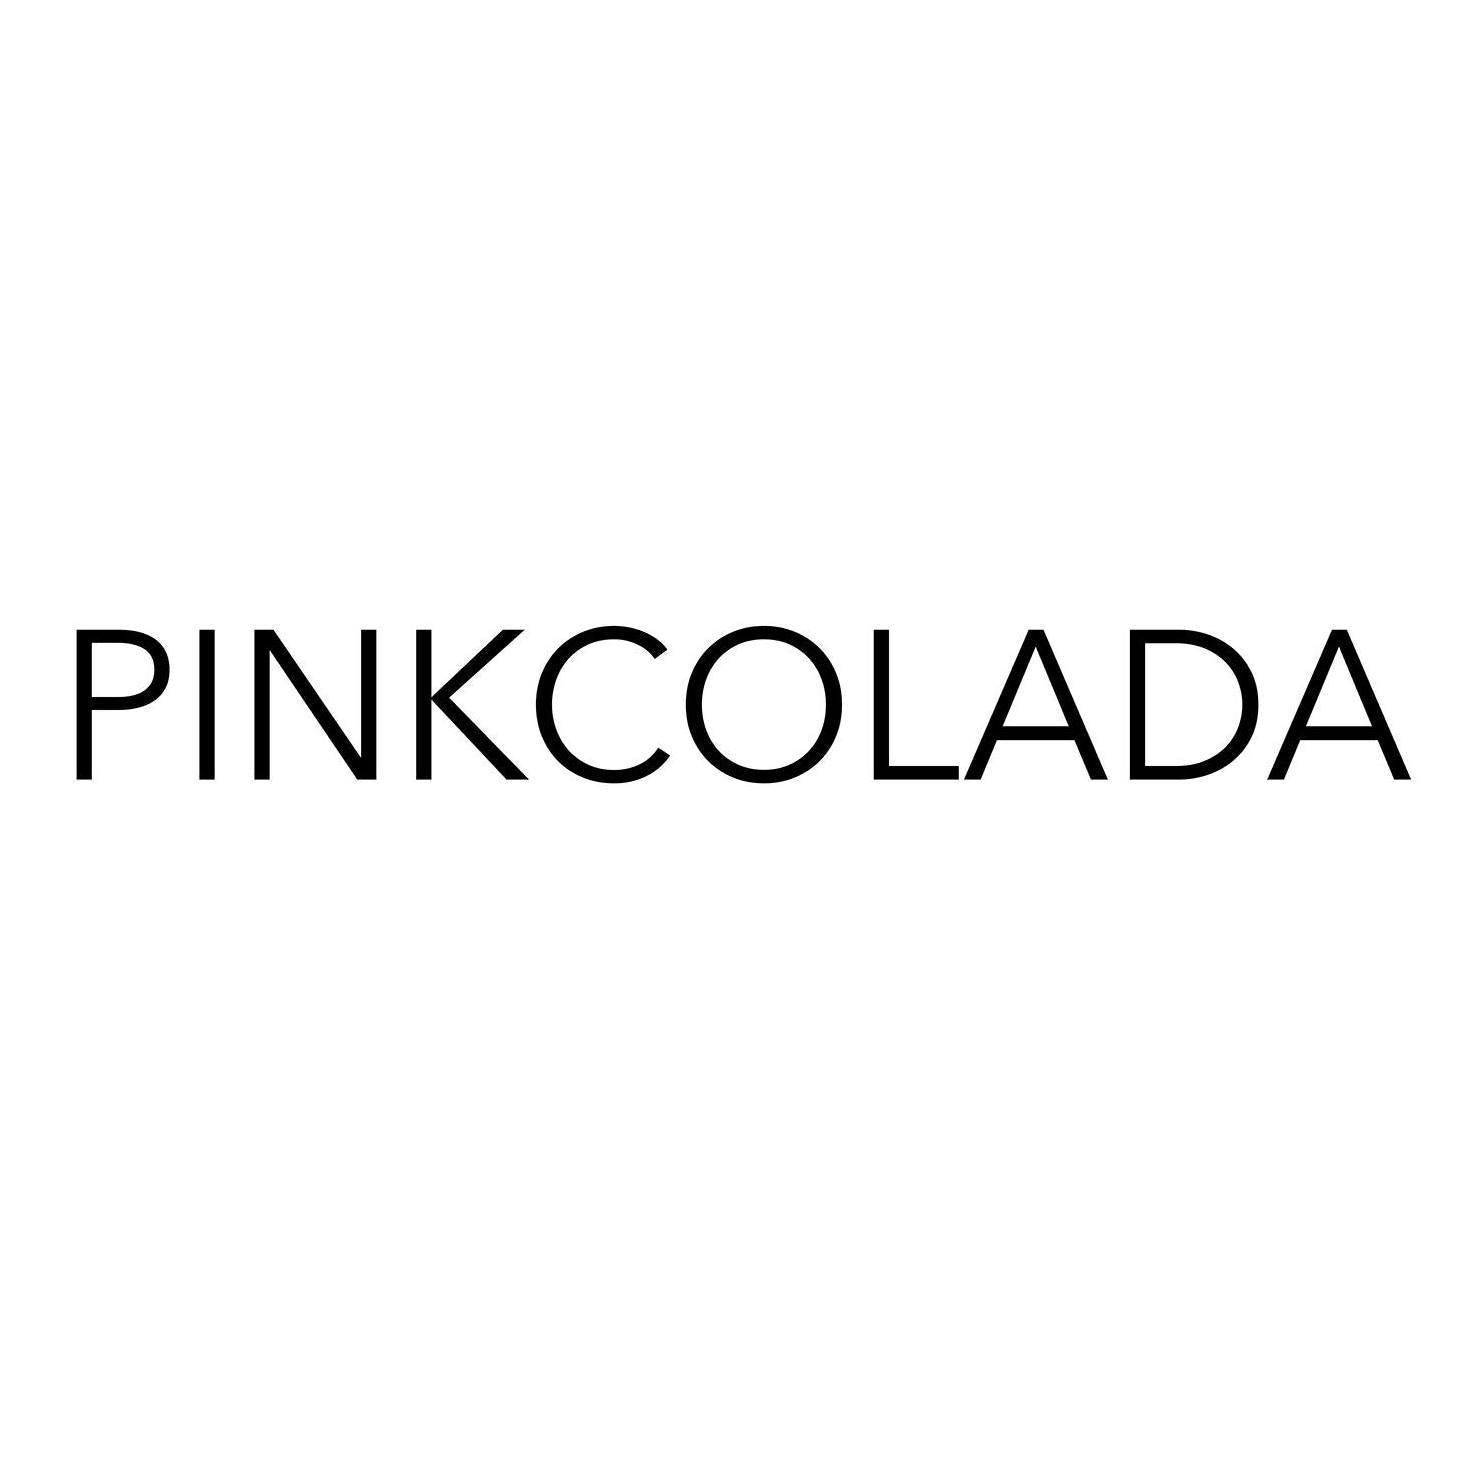 PINKCOLADA